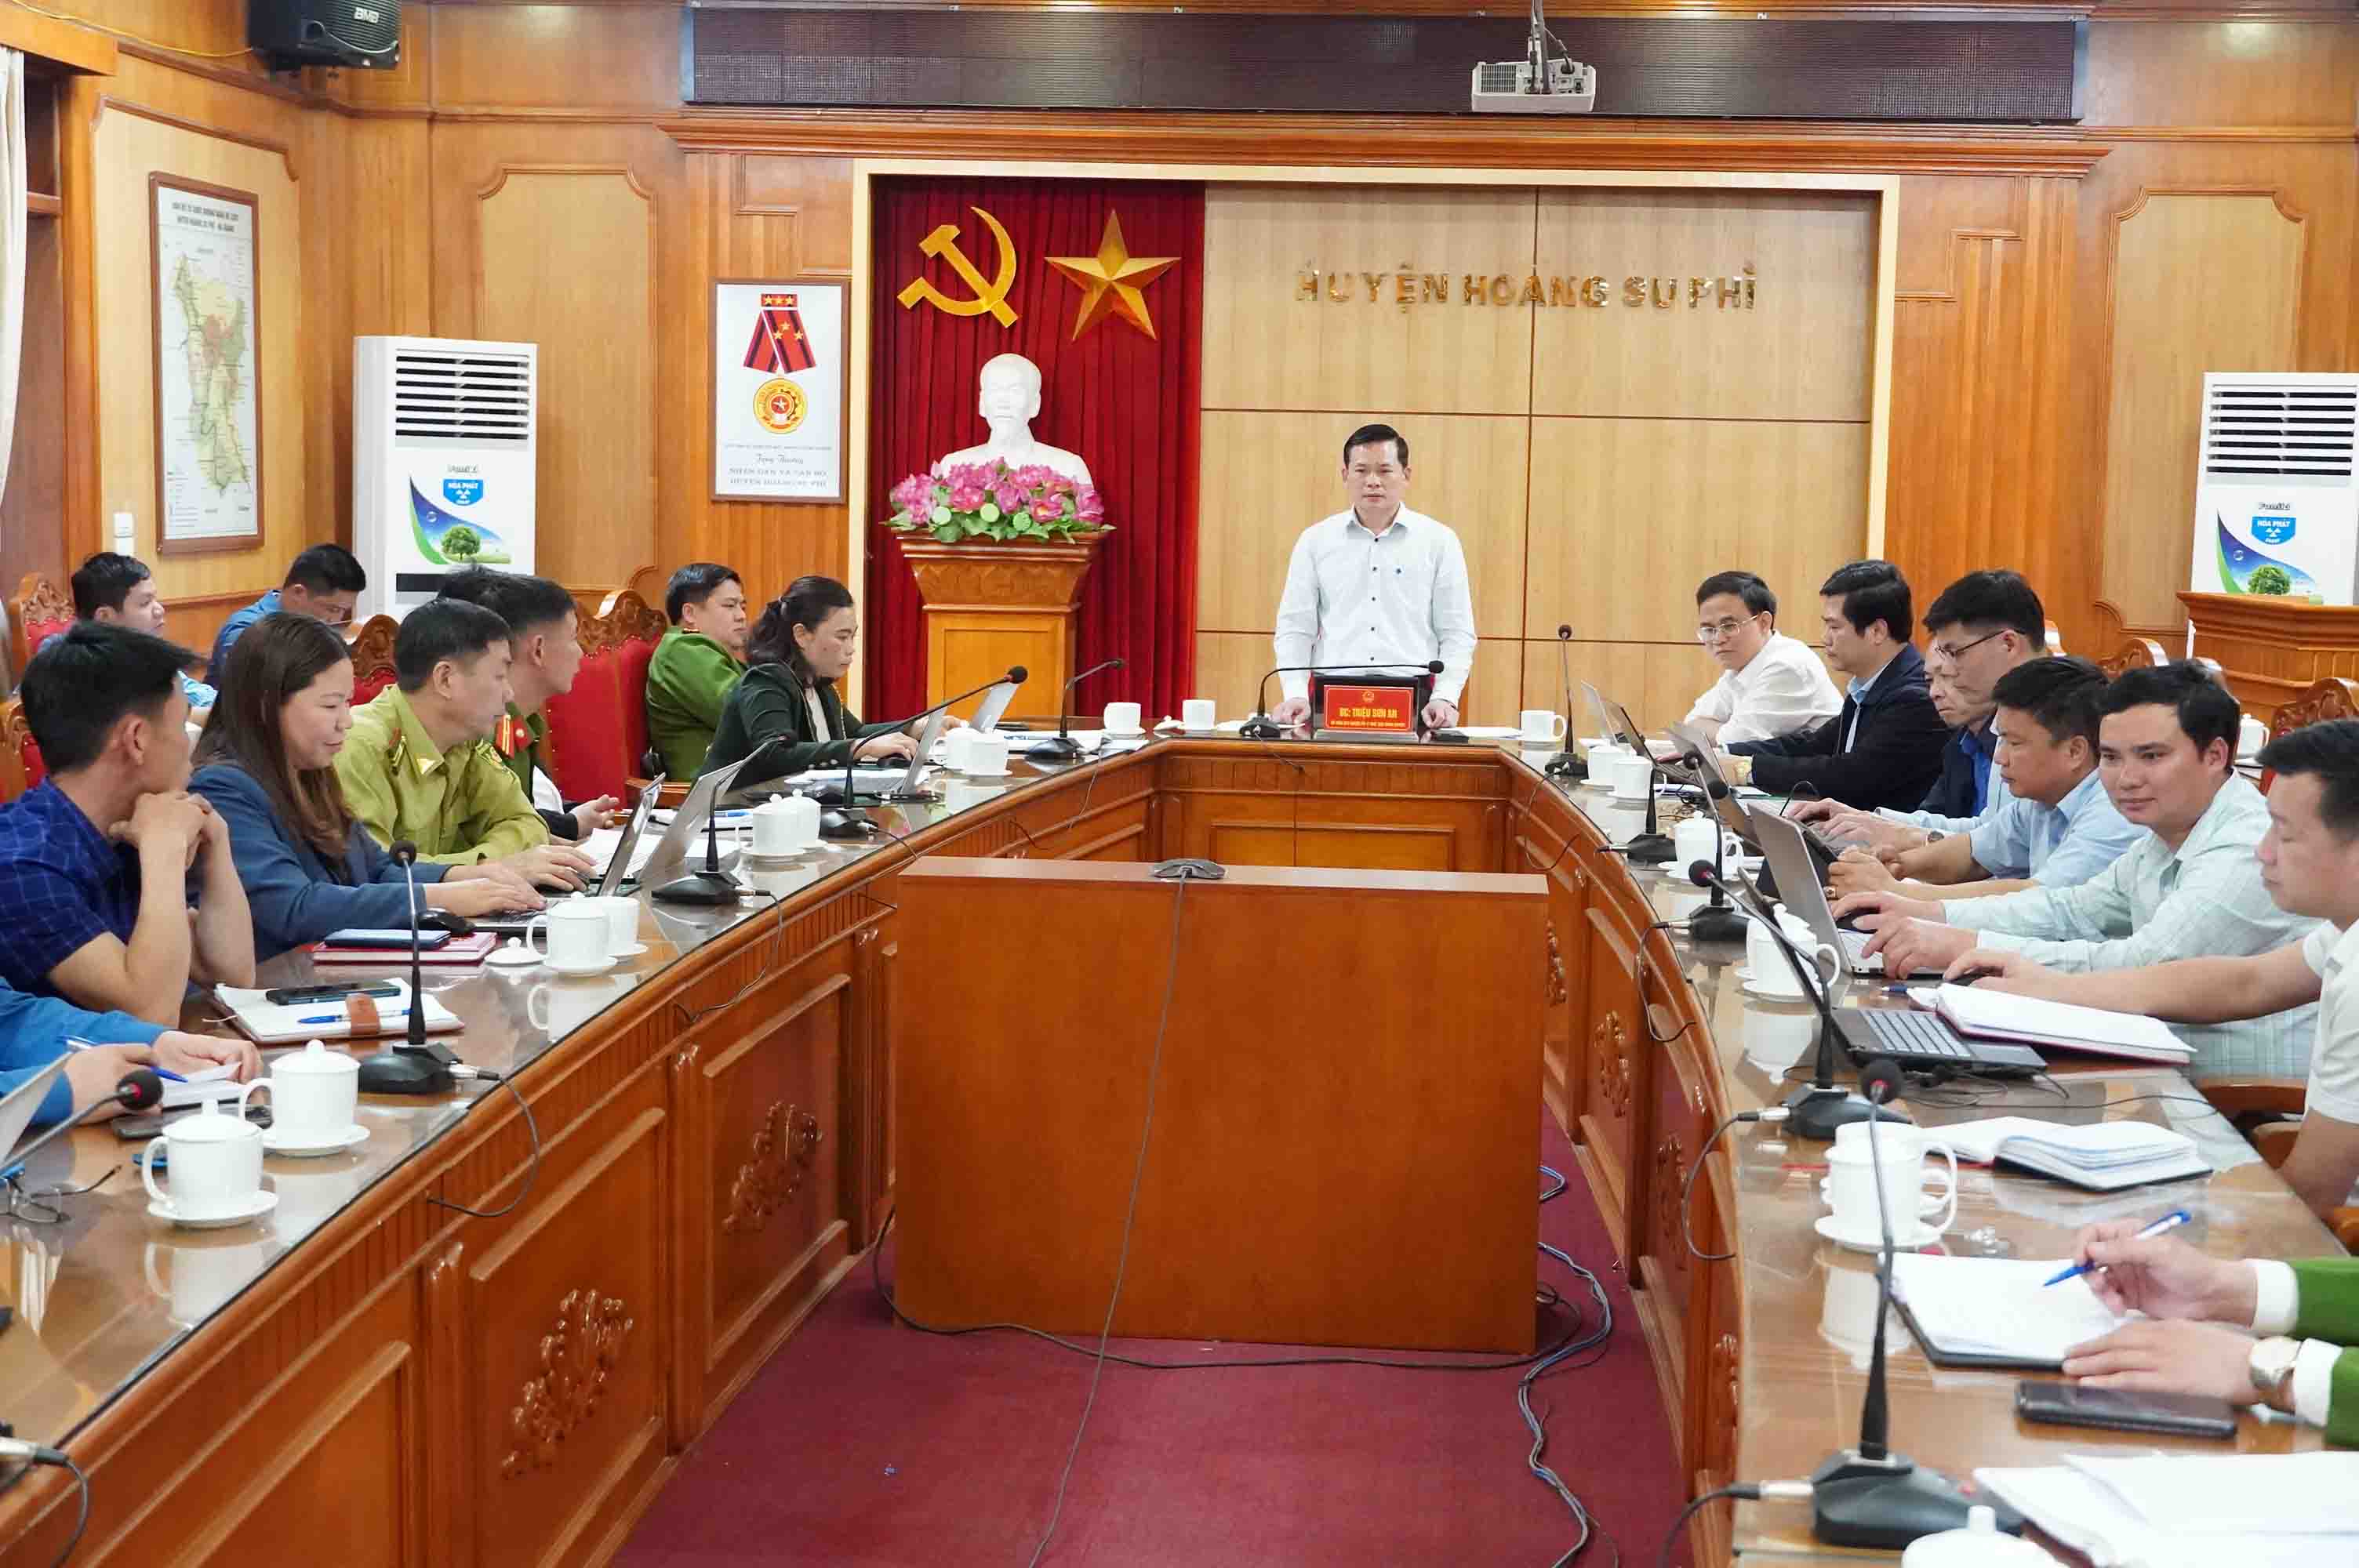 UBND huyện Hoàng Su Phì quán triệt và bàn giải pháp quản lý nhà nước về đất đai